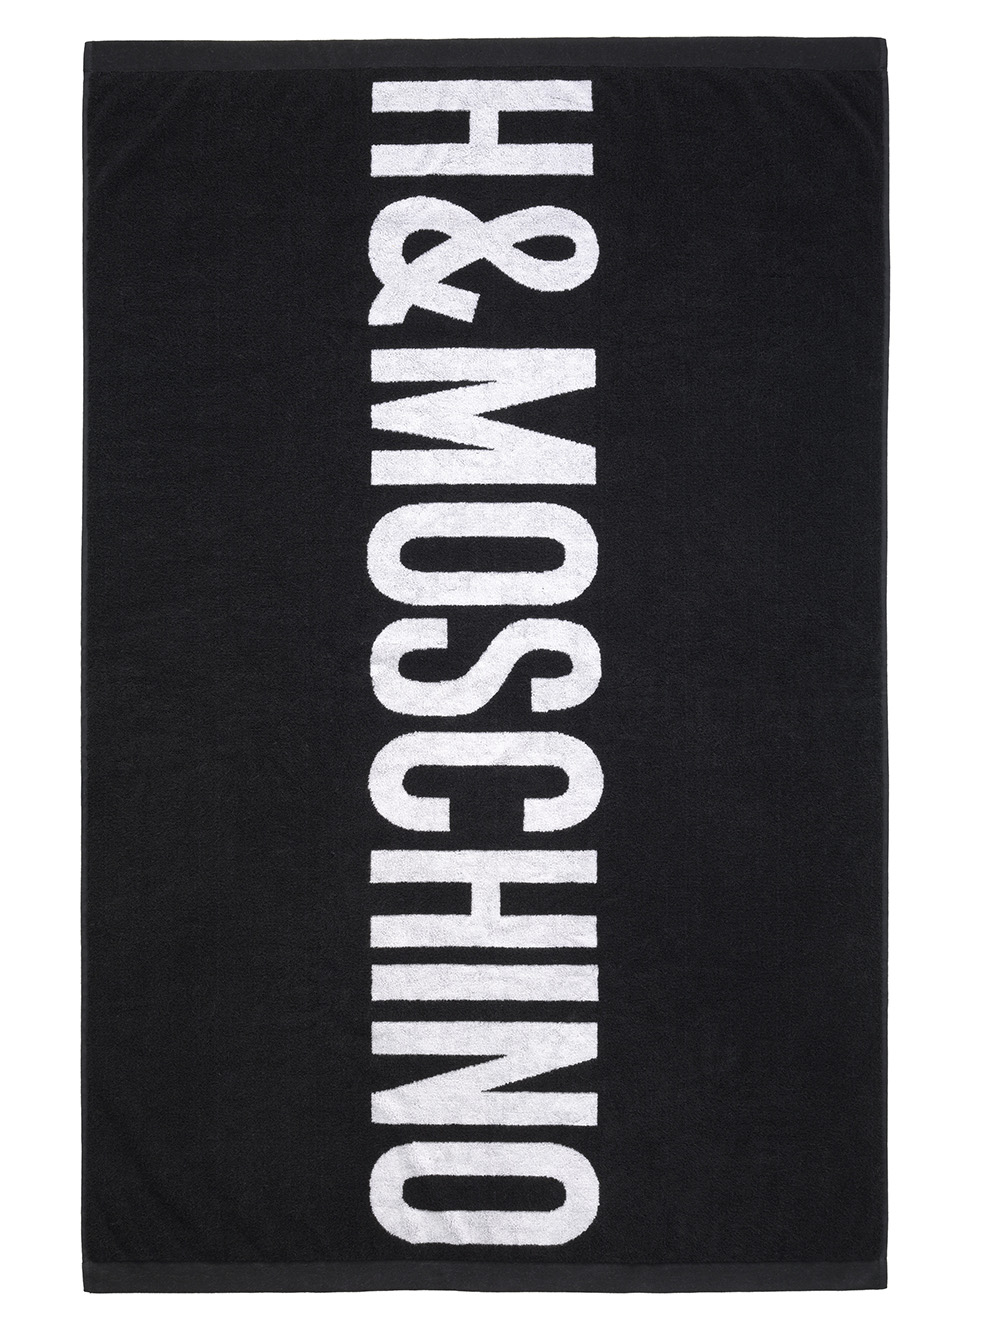 MOSCHINO [TV] H&M Beach Towel $69.99